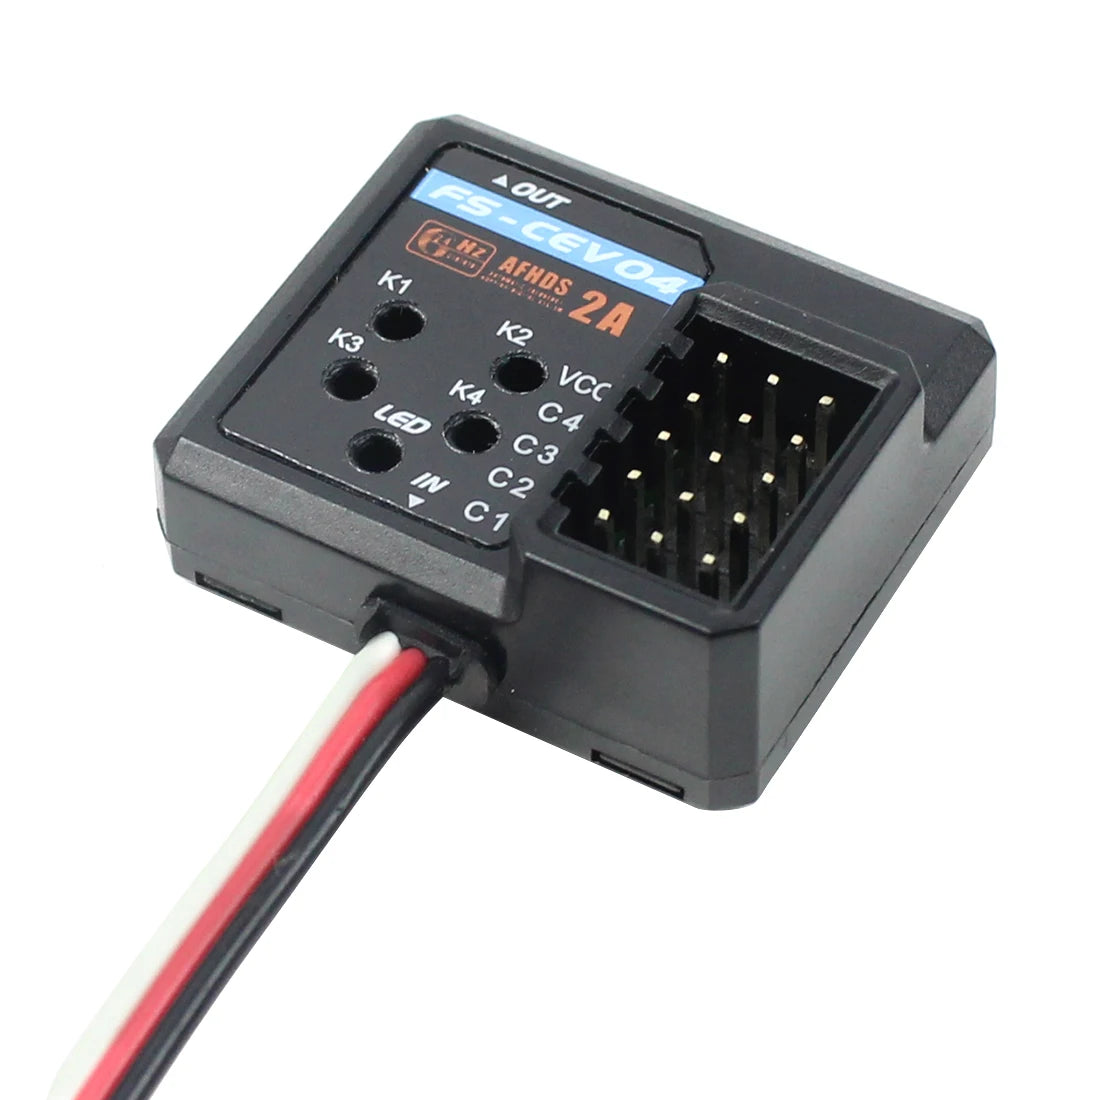 MODEL: FS-CPD01 RPM Telemetry [magnetic] module